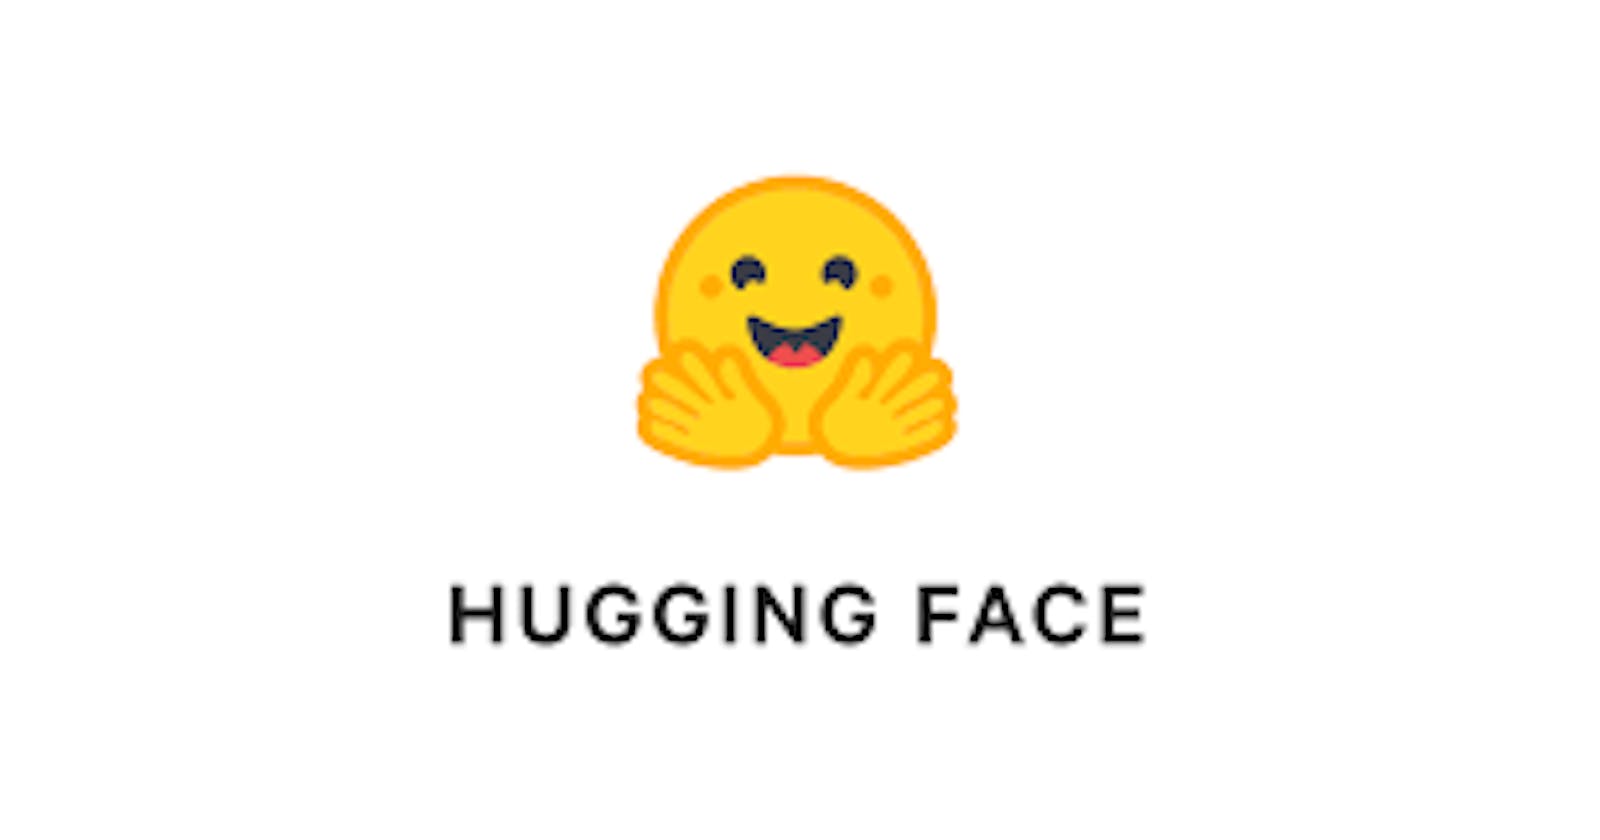 Text Summarization App using Hugging Face 🤗